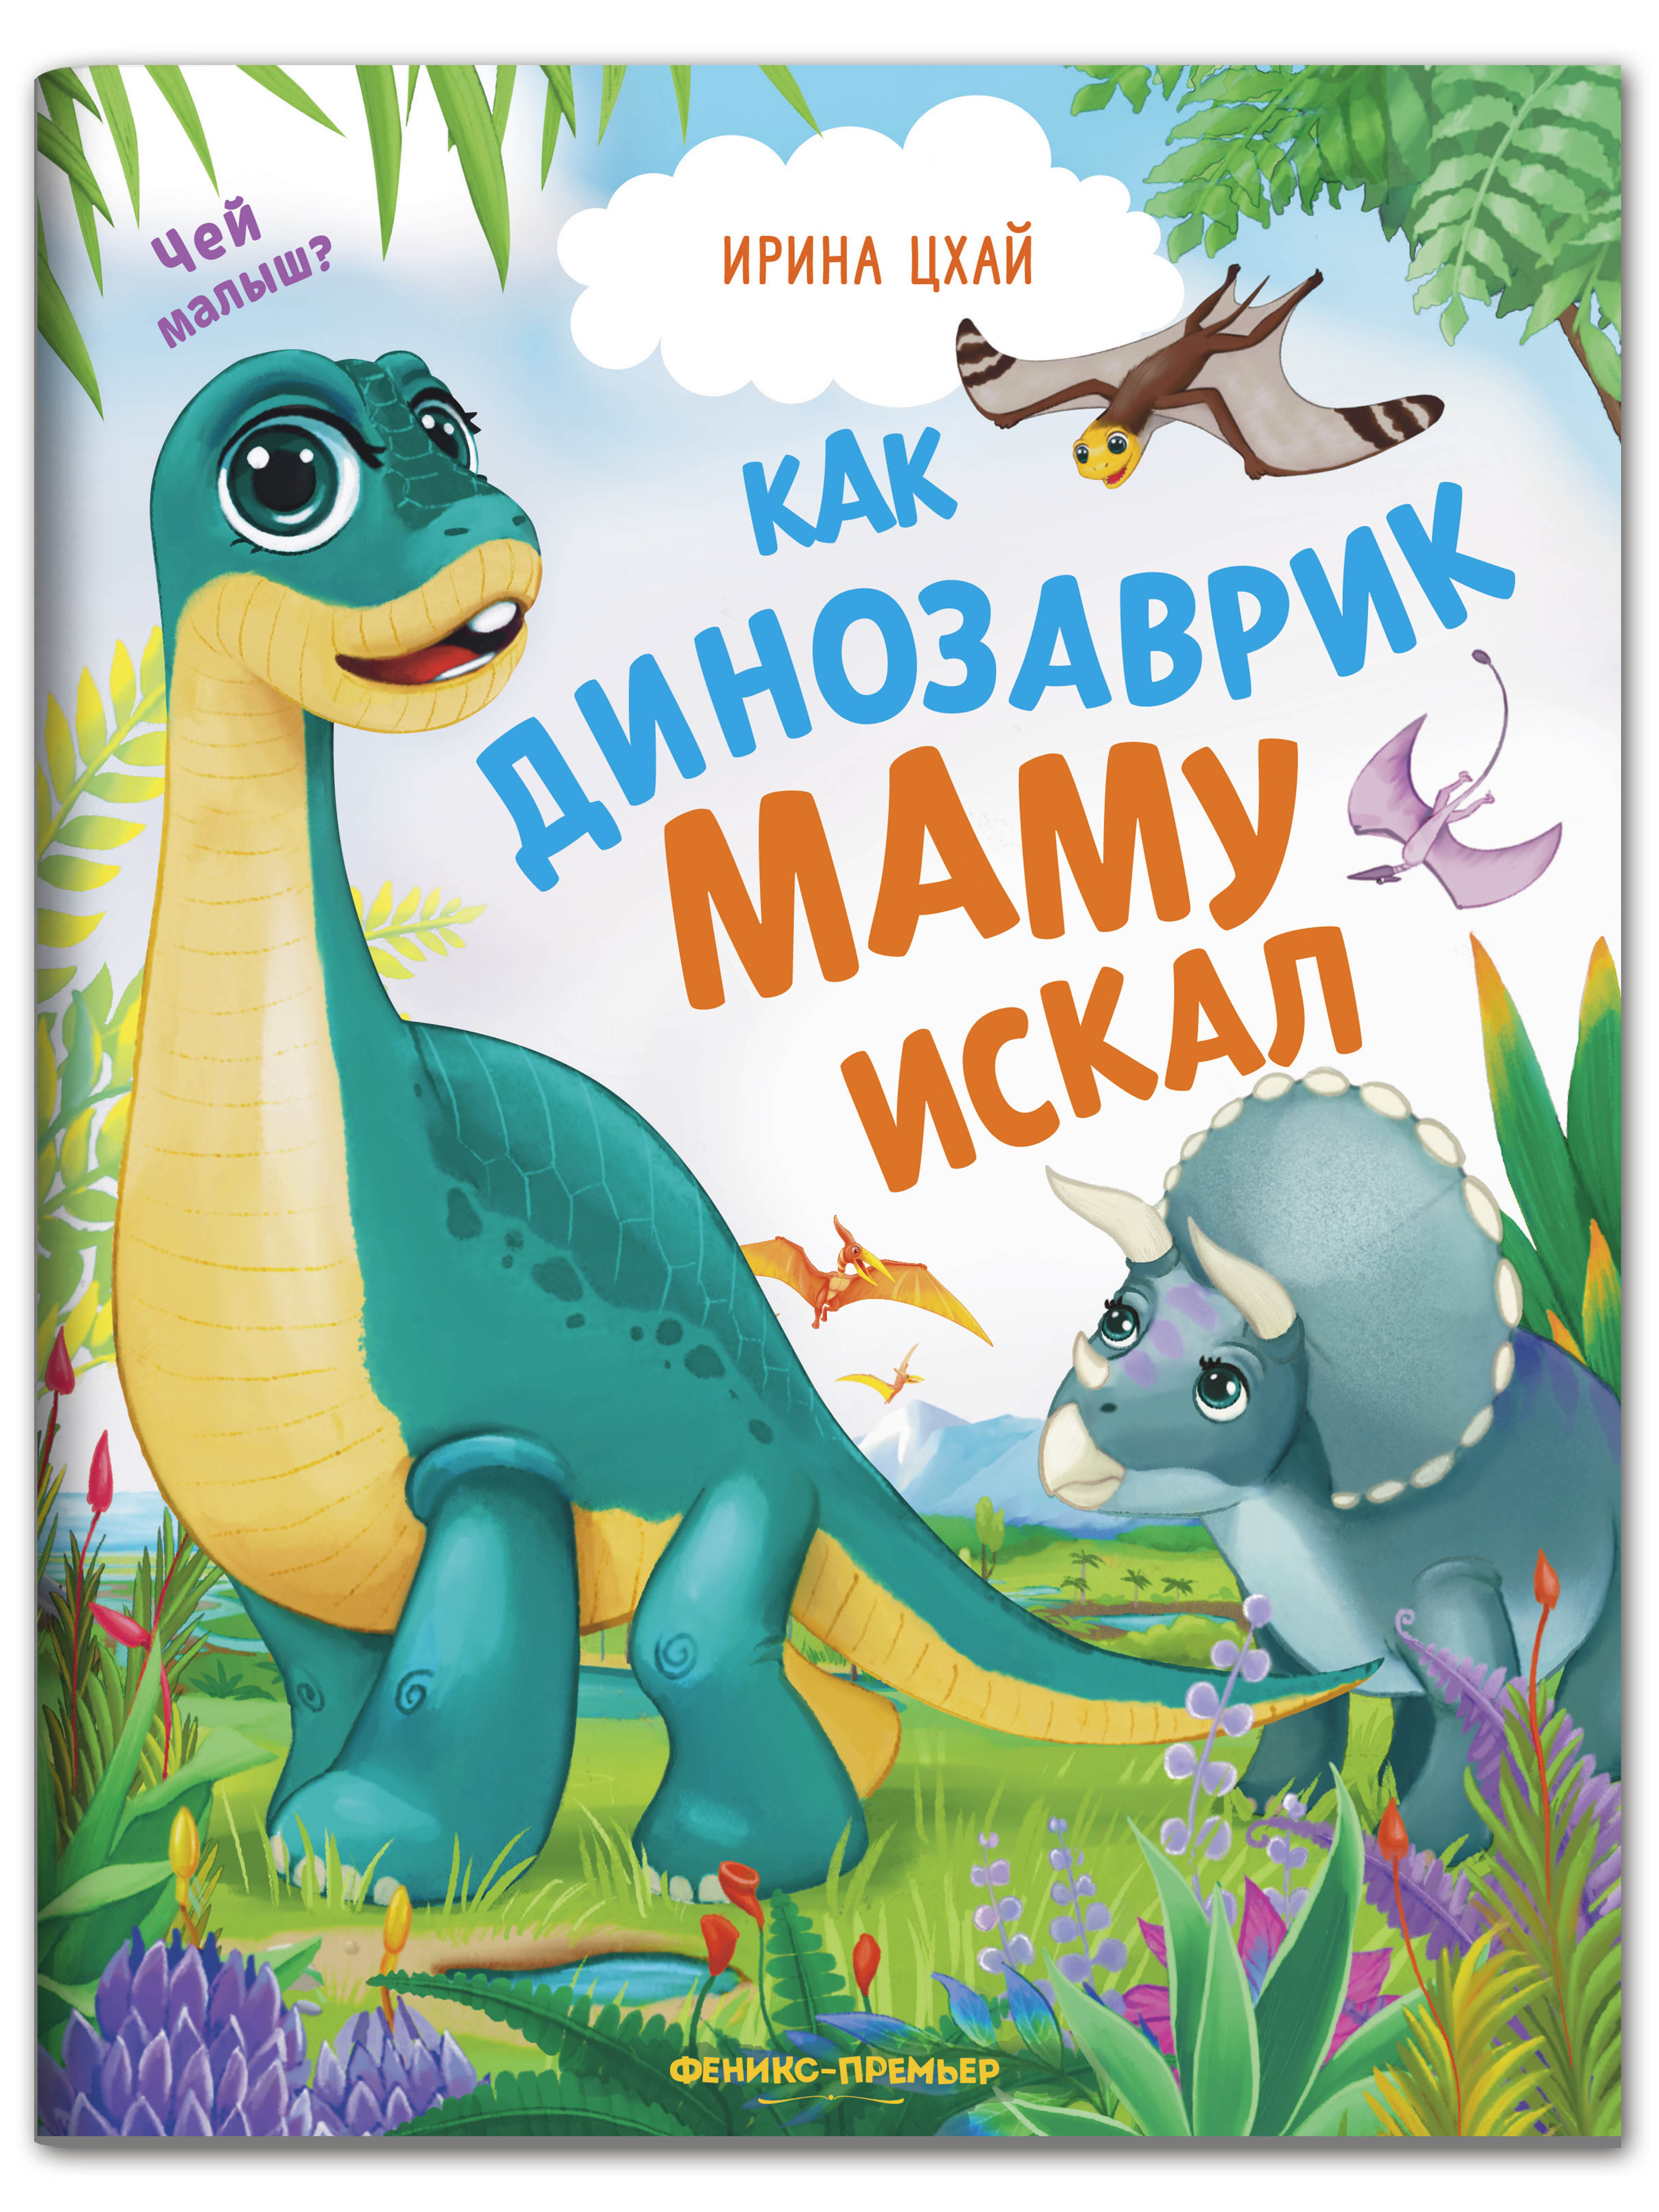 Книга Феникс Премьер Как динозаврик маму искал - фото 1